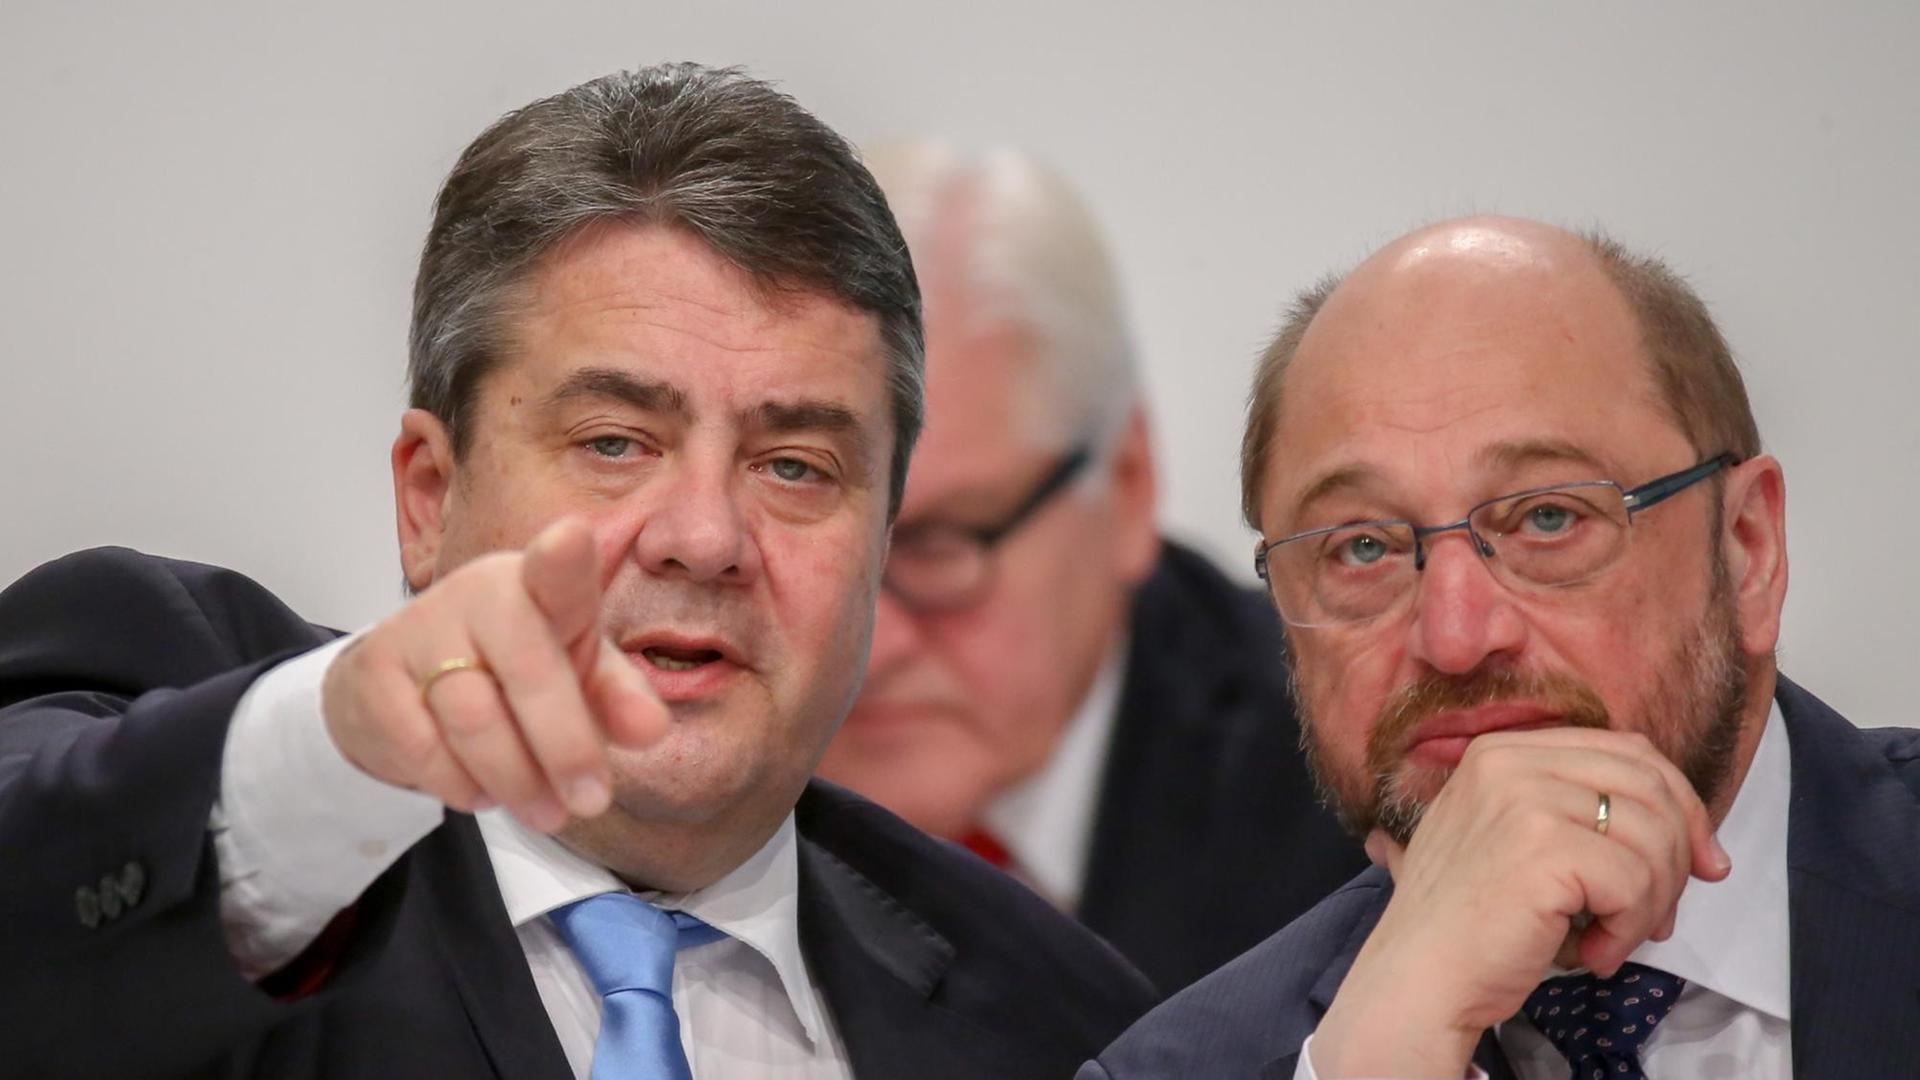 Der SPD-Vorsitzende Sigmar Gabriel spricht mit EU Parlamentspräsident Martin Schulz (SPD, r) am 12.12.2015 beim Bundesparteitag der Sozialdemokratischen Partei Deutschlands in Berlin neben der Bühne.